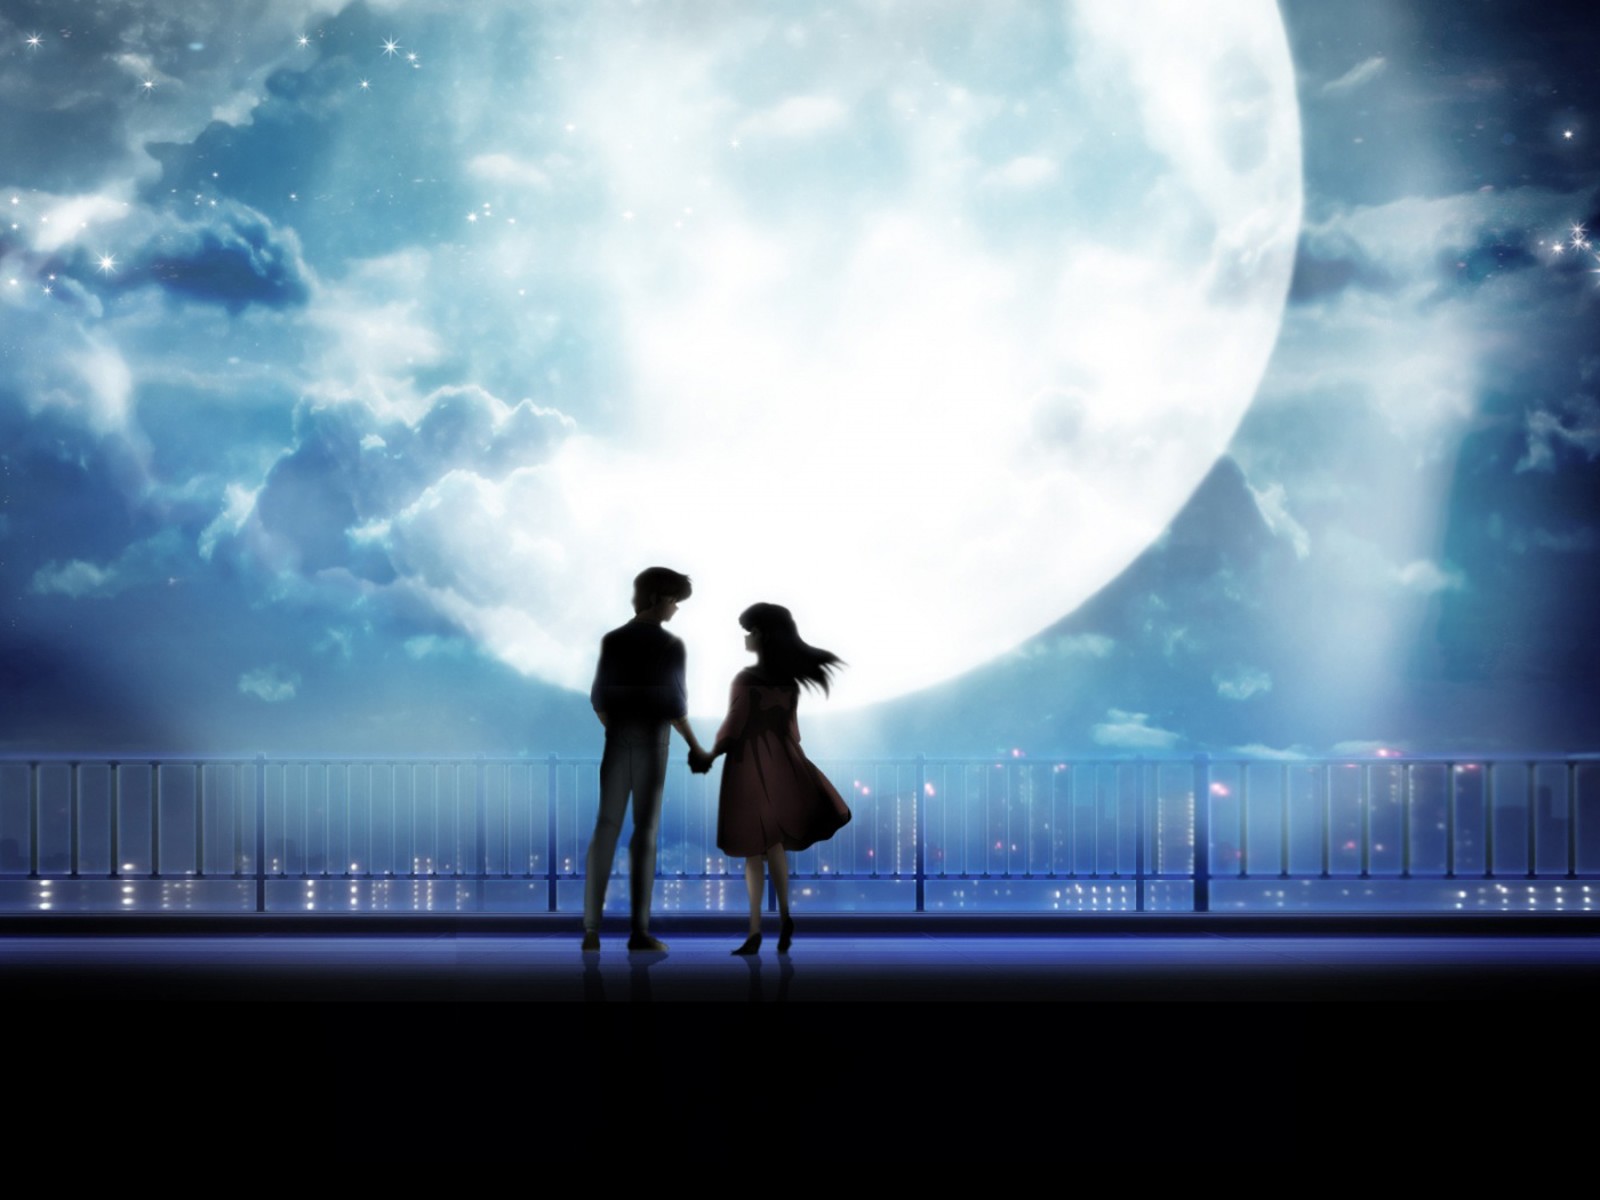 Anime Art Anime Couple Holding Hands Moonlight Desktop, Wallpaper13.com